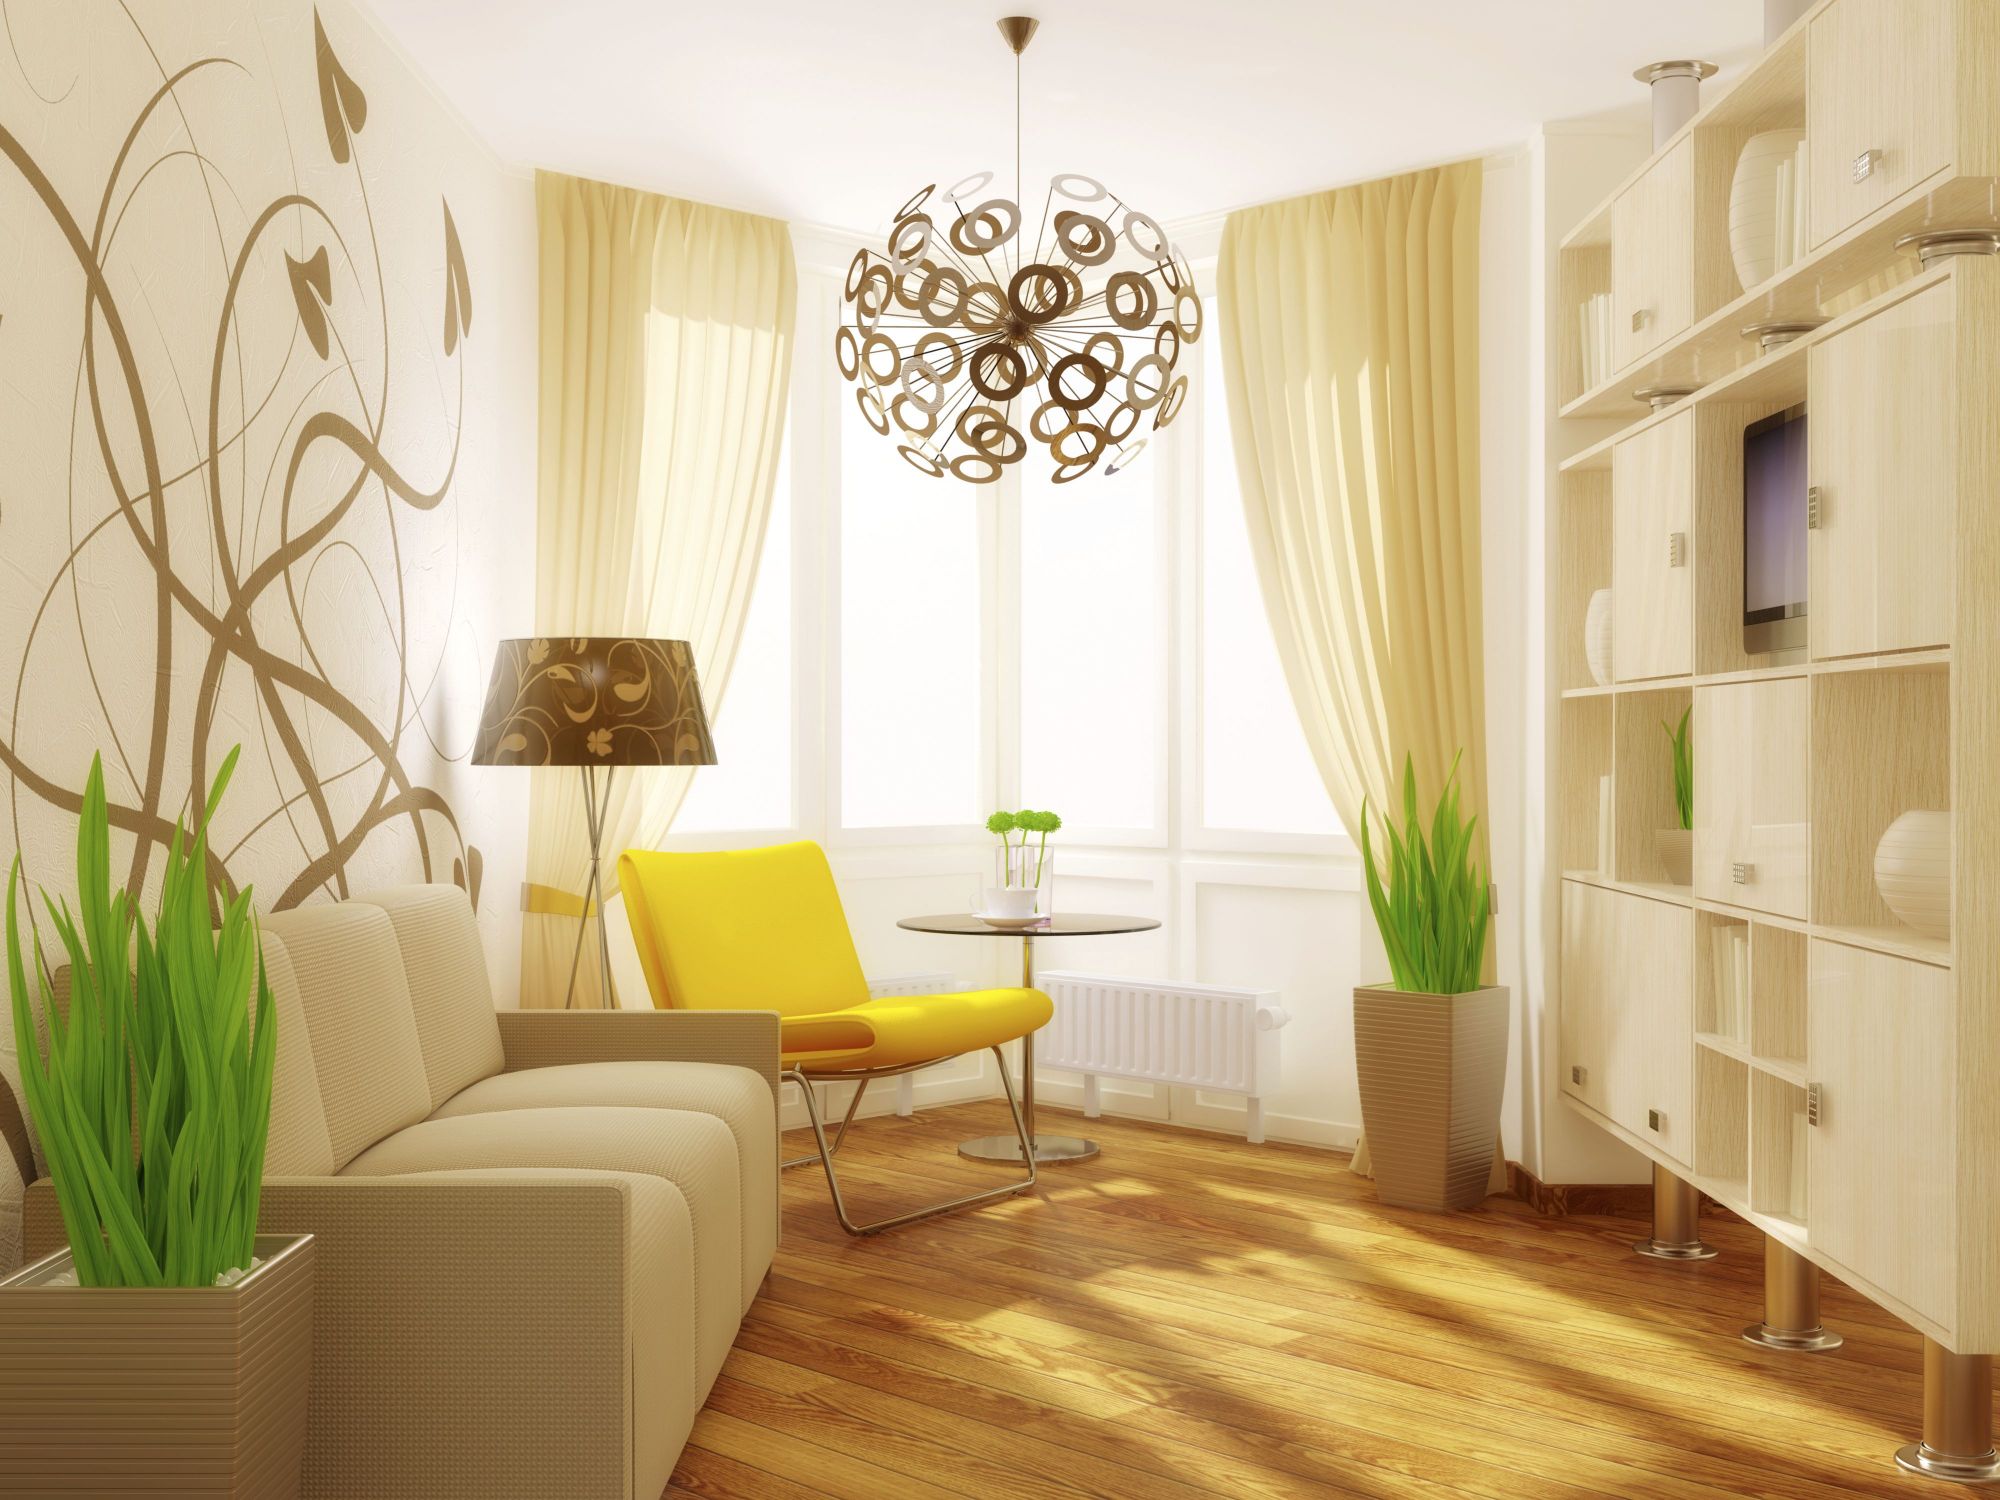 Màu sắc nhẹ nhàng giúp căn phòng nhỏ vẫn mang lại cảm giác thoải mái